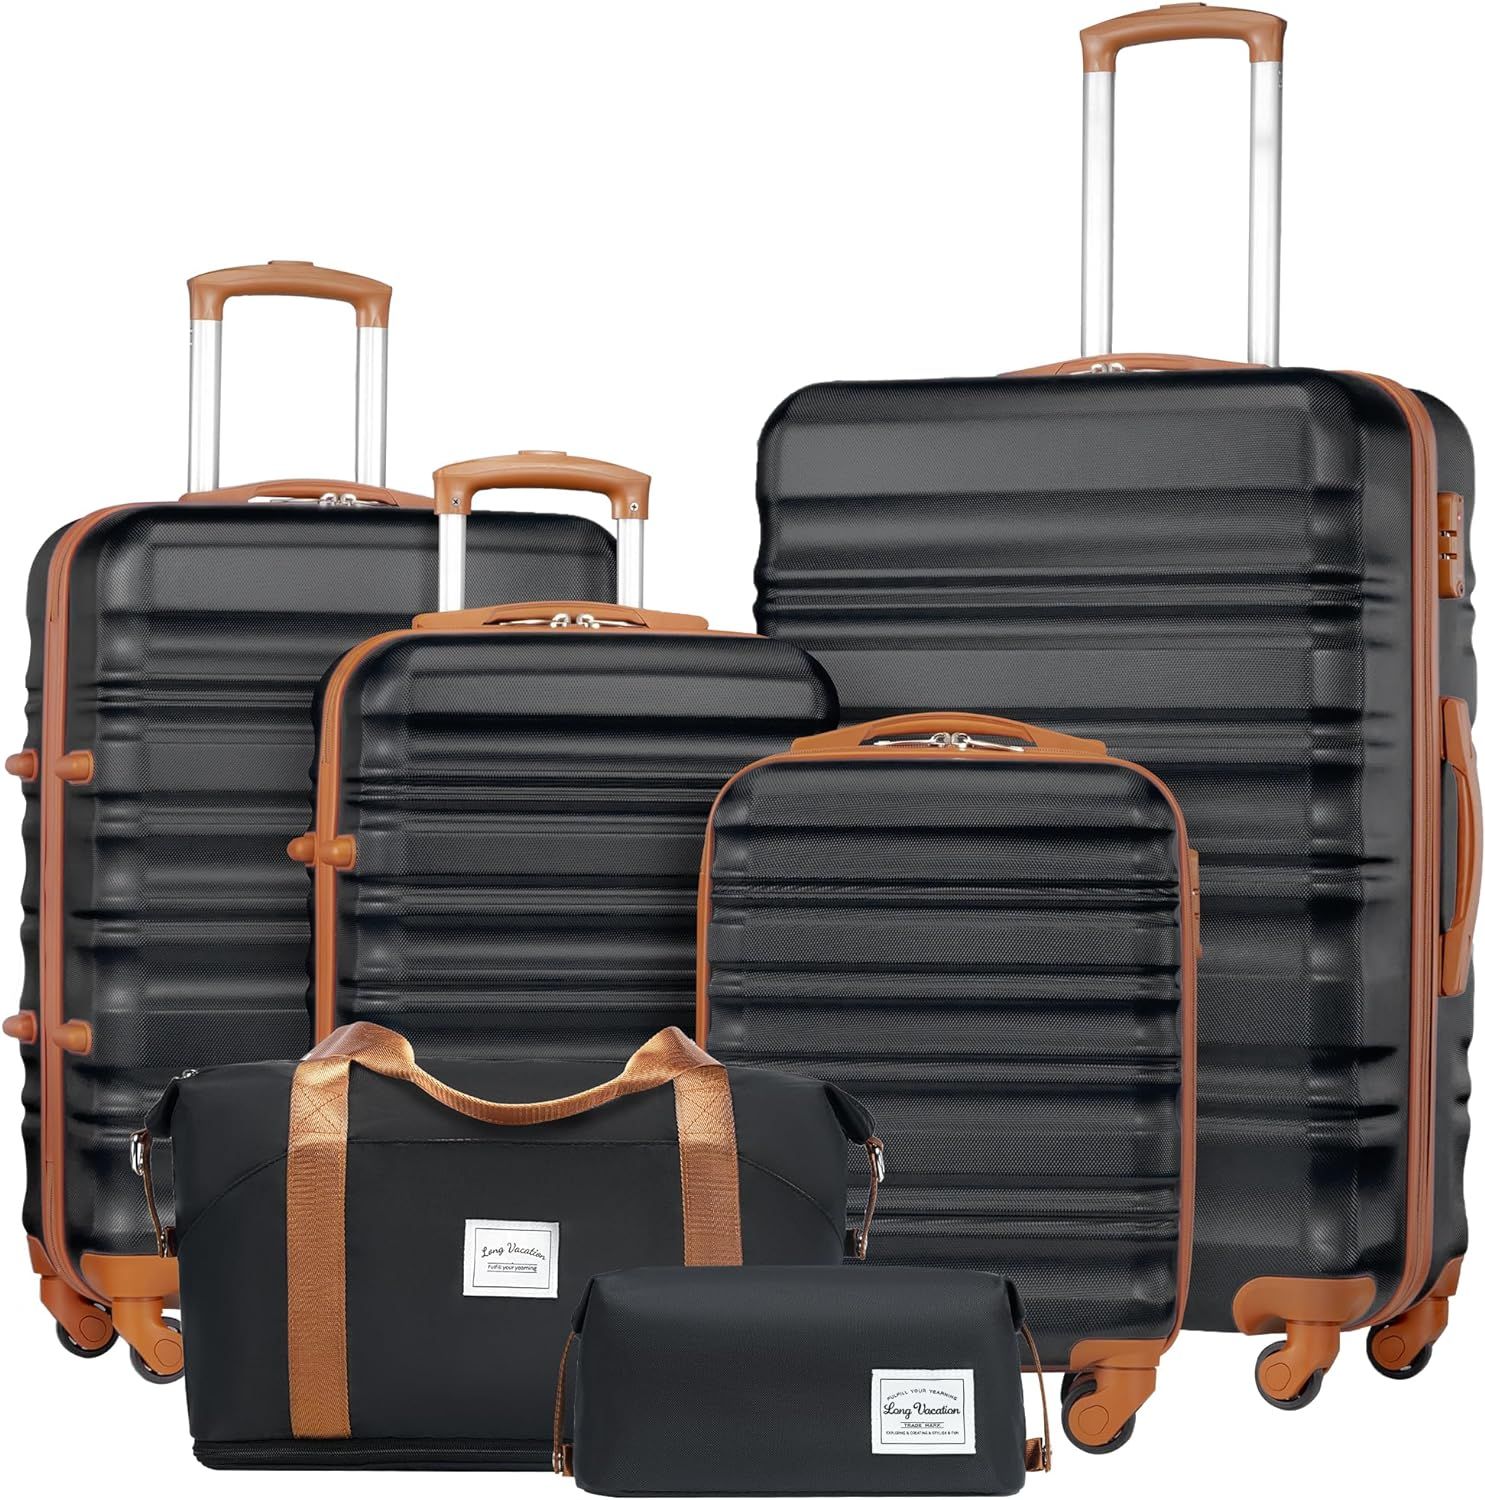 LONG VACATION Luggage Set 4 Piece Luggage Set ABS hardshell TSA Lock Spinner Wheels Luggage Carry... | Amazon (US)